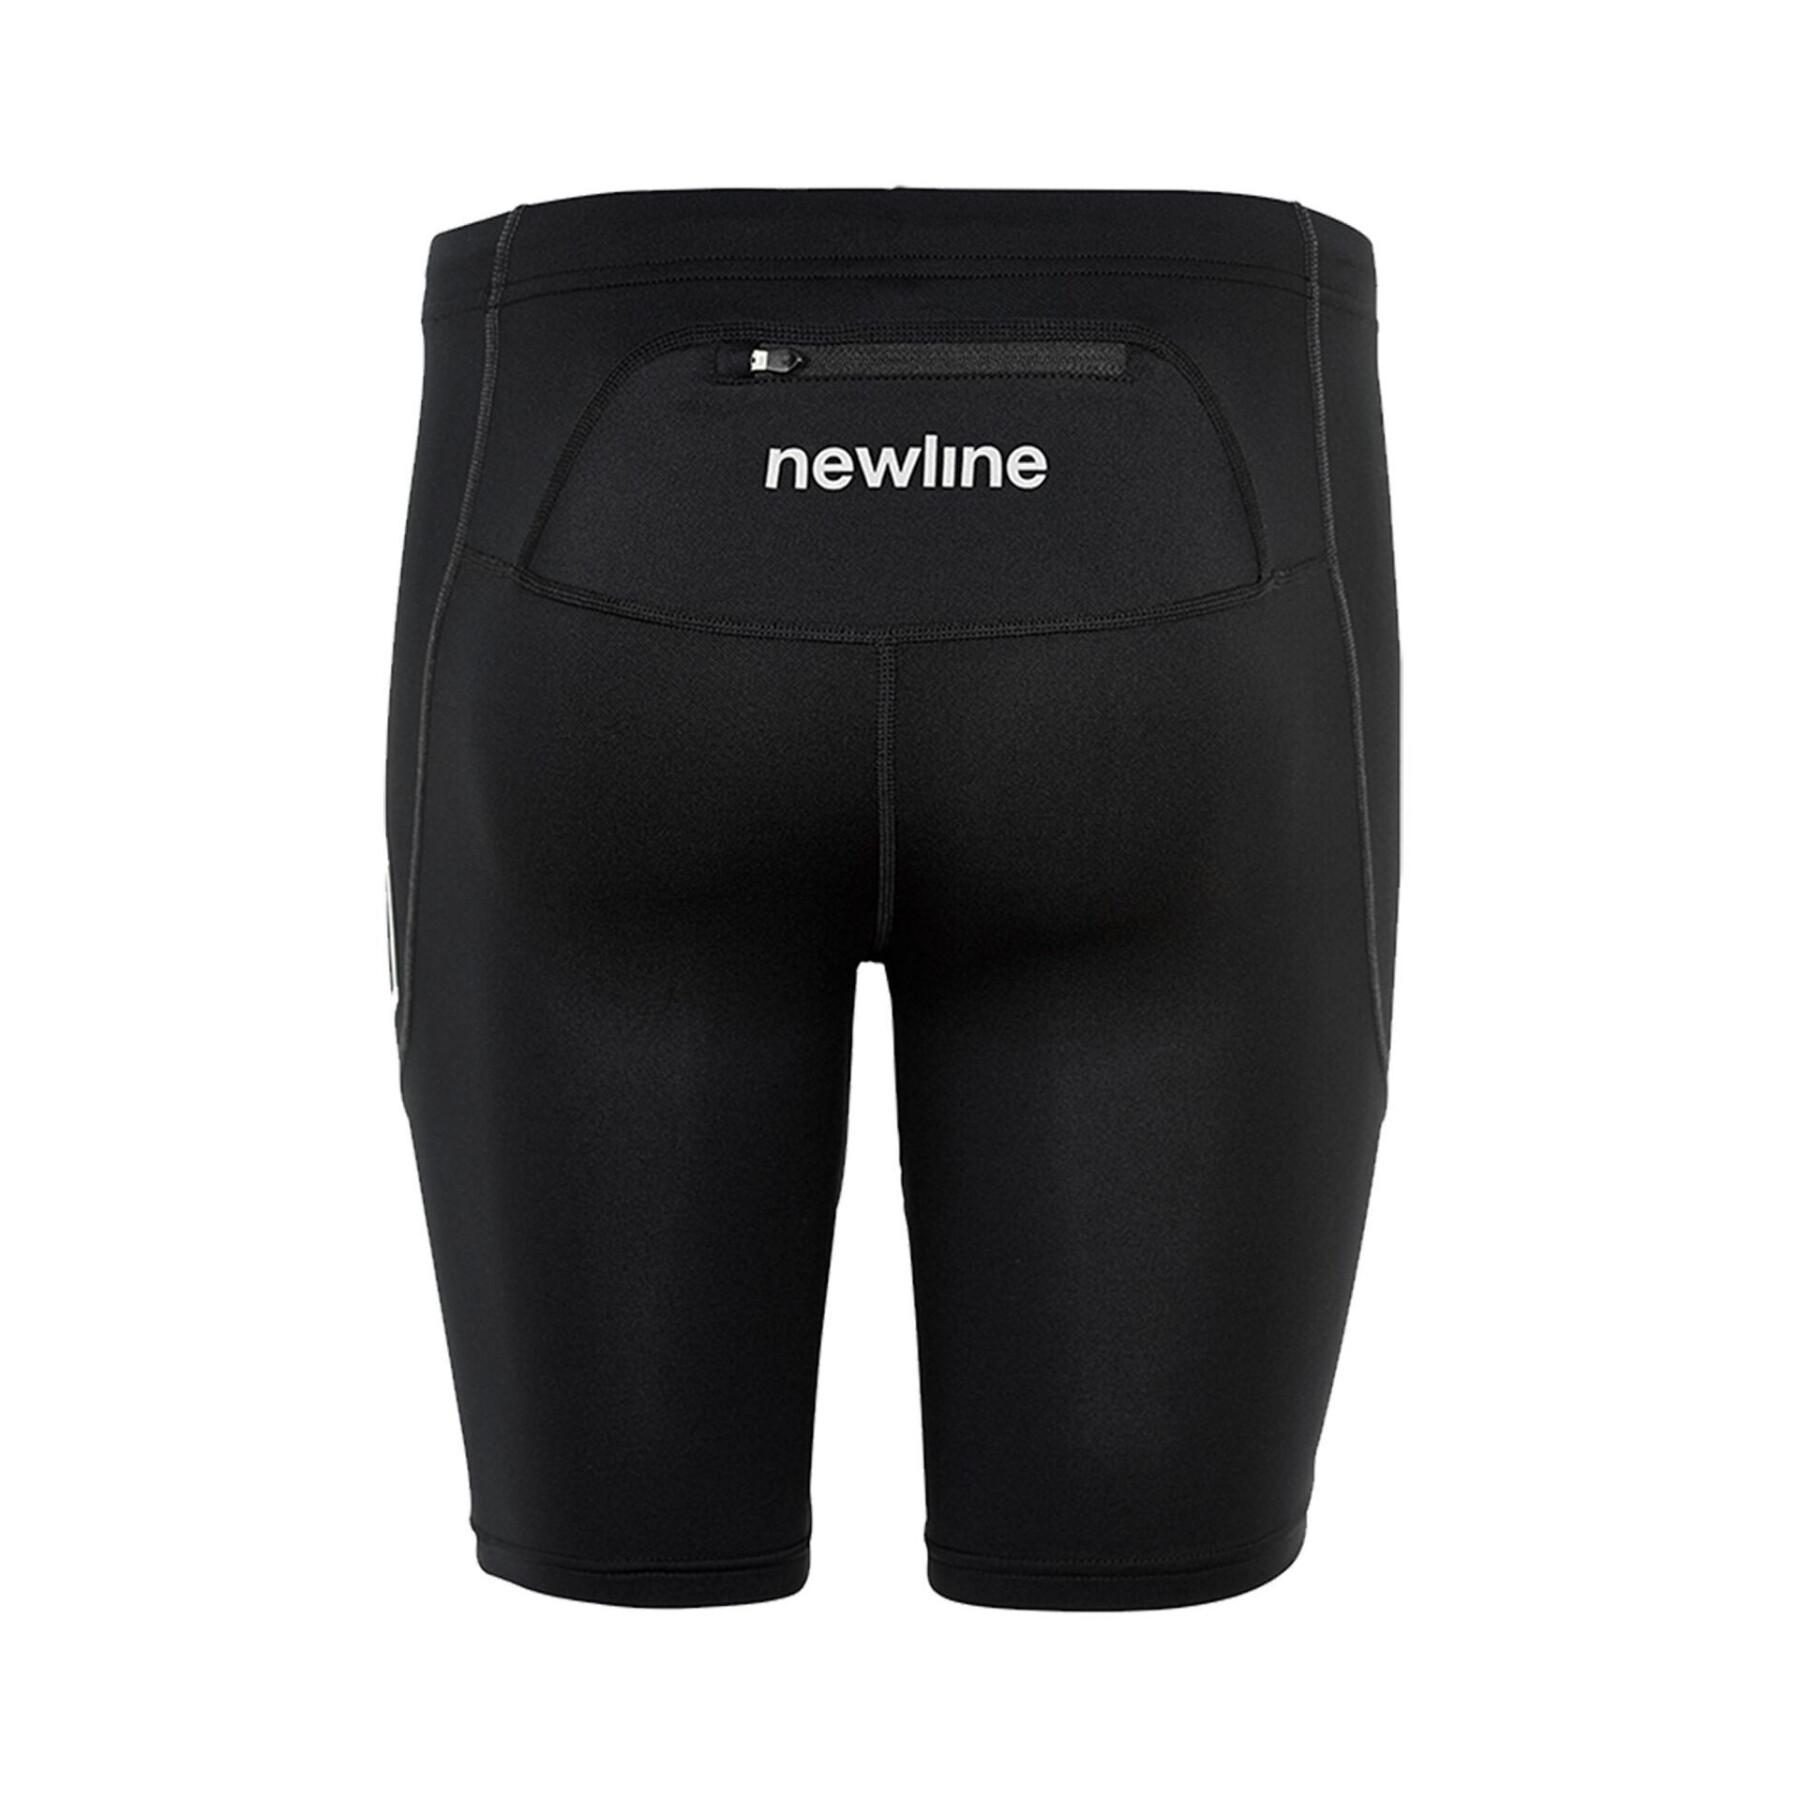 Pantalón corto compresión mujer Newline core sprinters